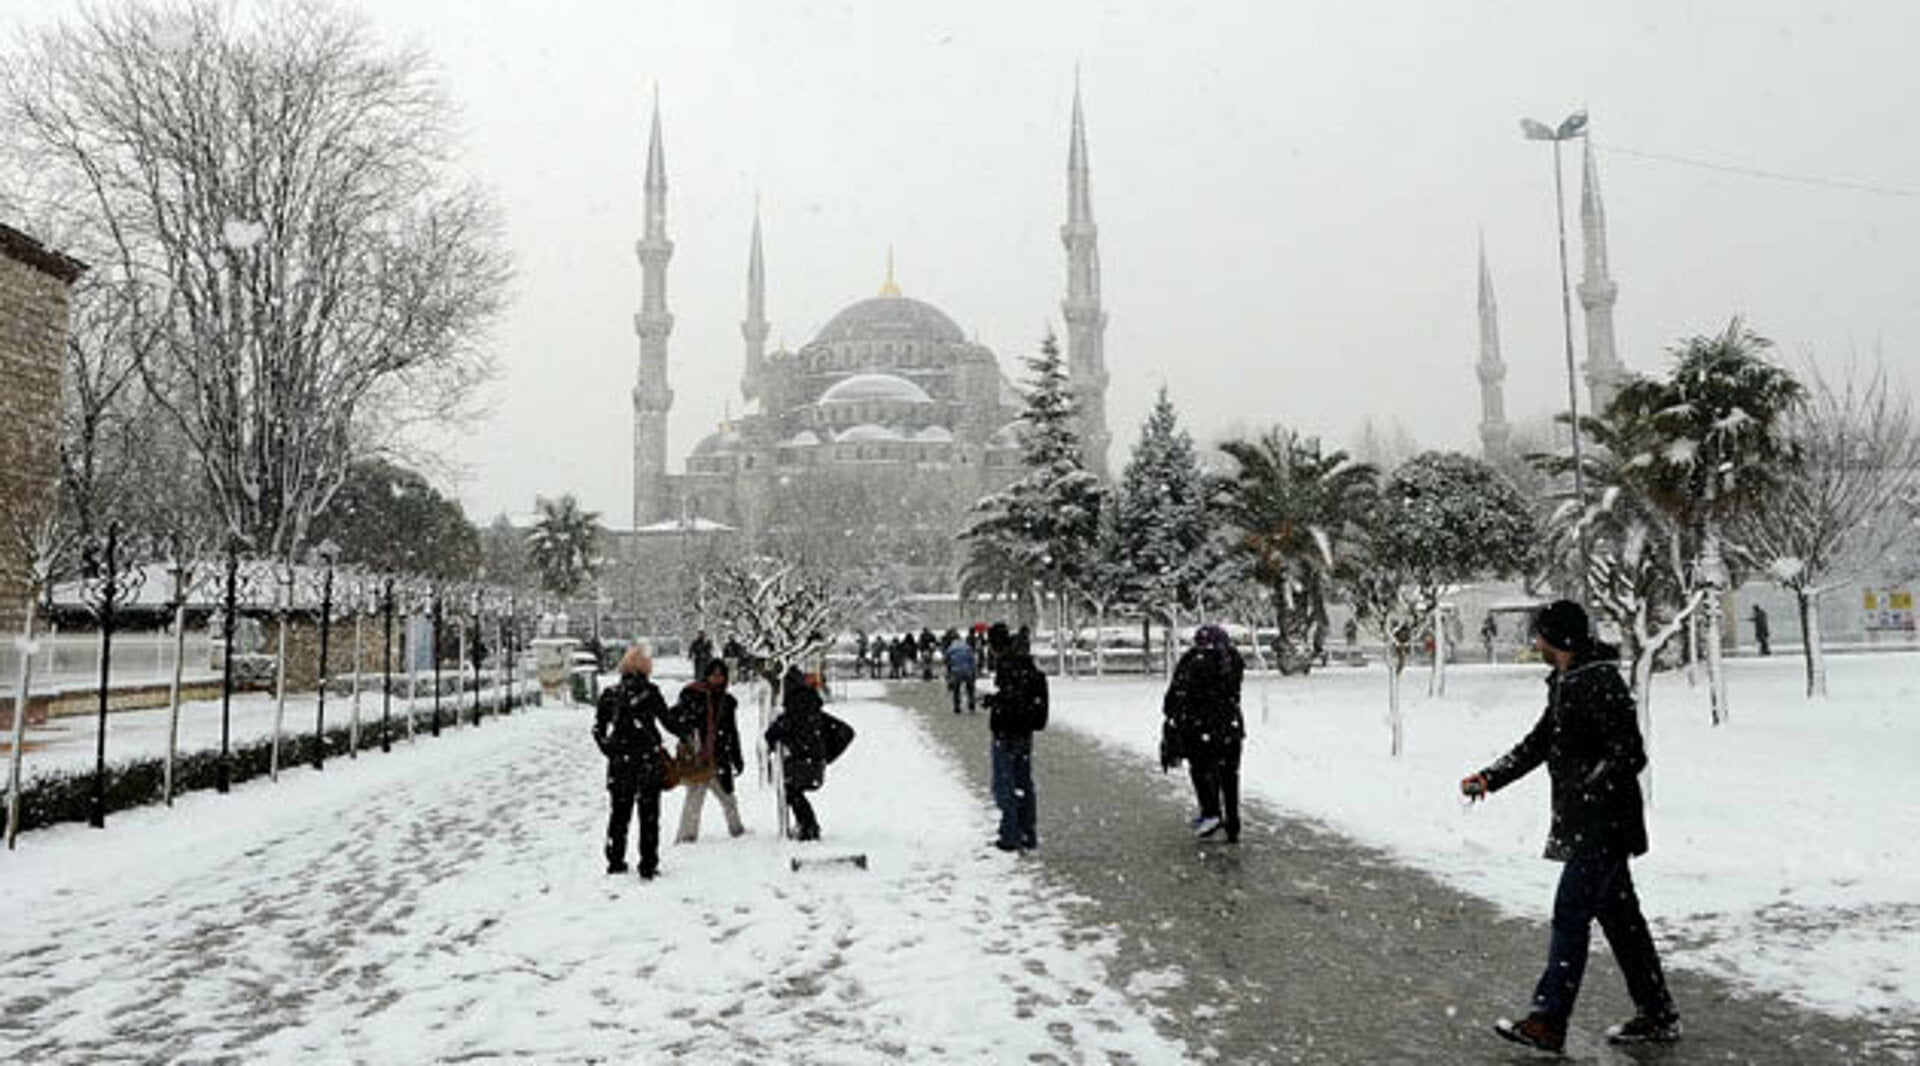 إسطنبول - عاصفة ثلجية قادمة وستغطي معظم الولايات التركية خلال ايام الاسبوع القادم ( شاهد خرائط الطقس)